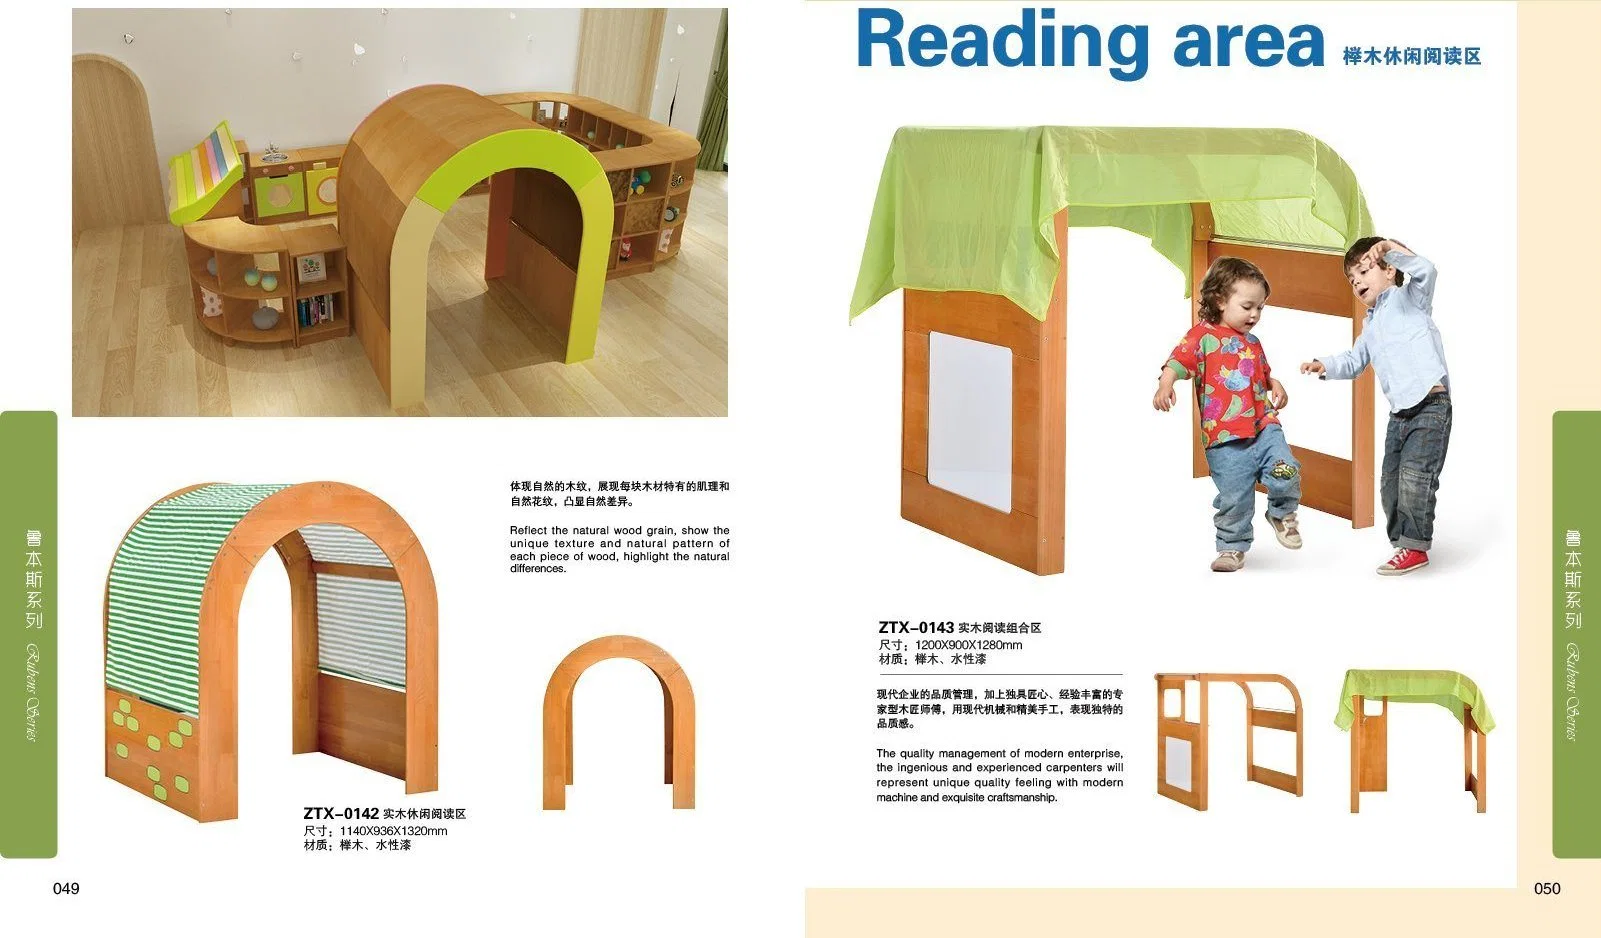 Детей просветительскую роль играют игрушки, деревянные кухонные Play для воспитателей детских садов и дошкольных учреждений, школьная мебель детские мебель спальня мебель